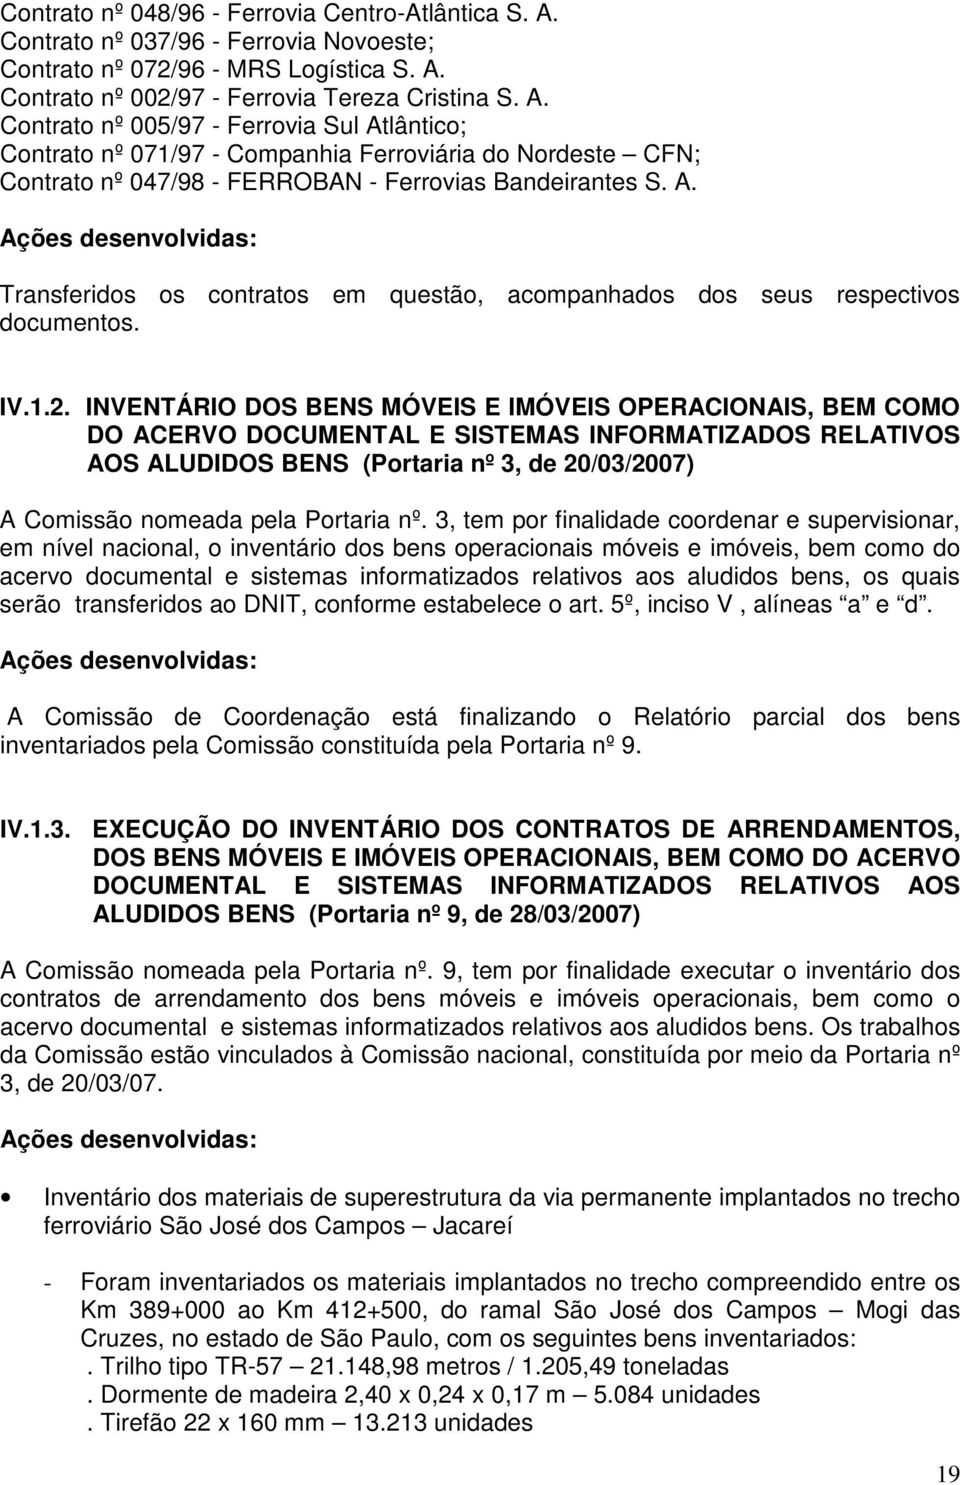 Contrato nº 002/97 - Ferrovia Tereza Cristina S. A.